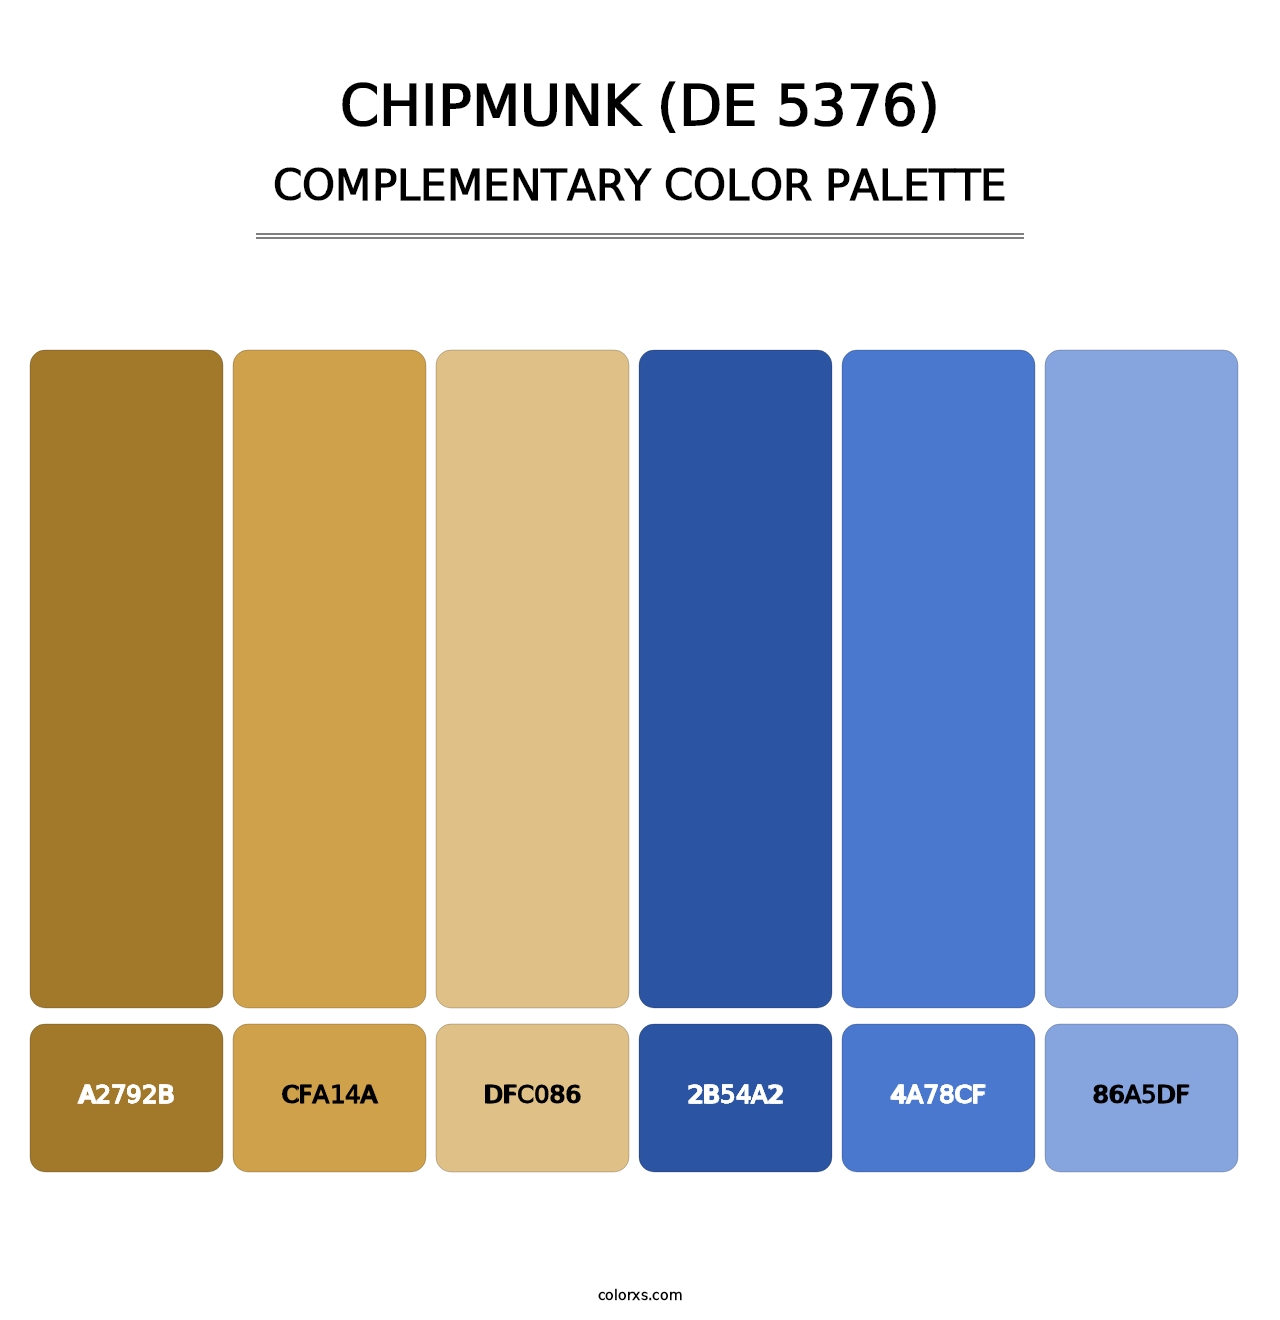 Chipmunk (DE 5376) - Complementary Color Palette